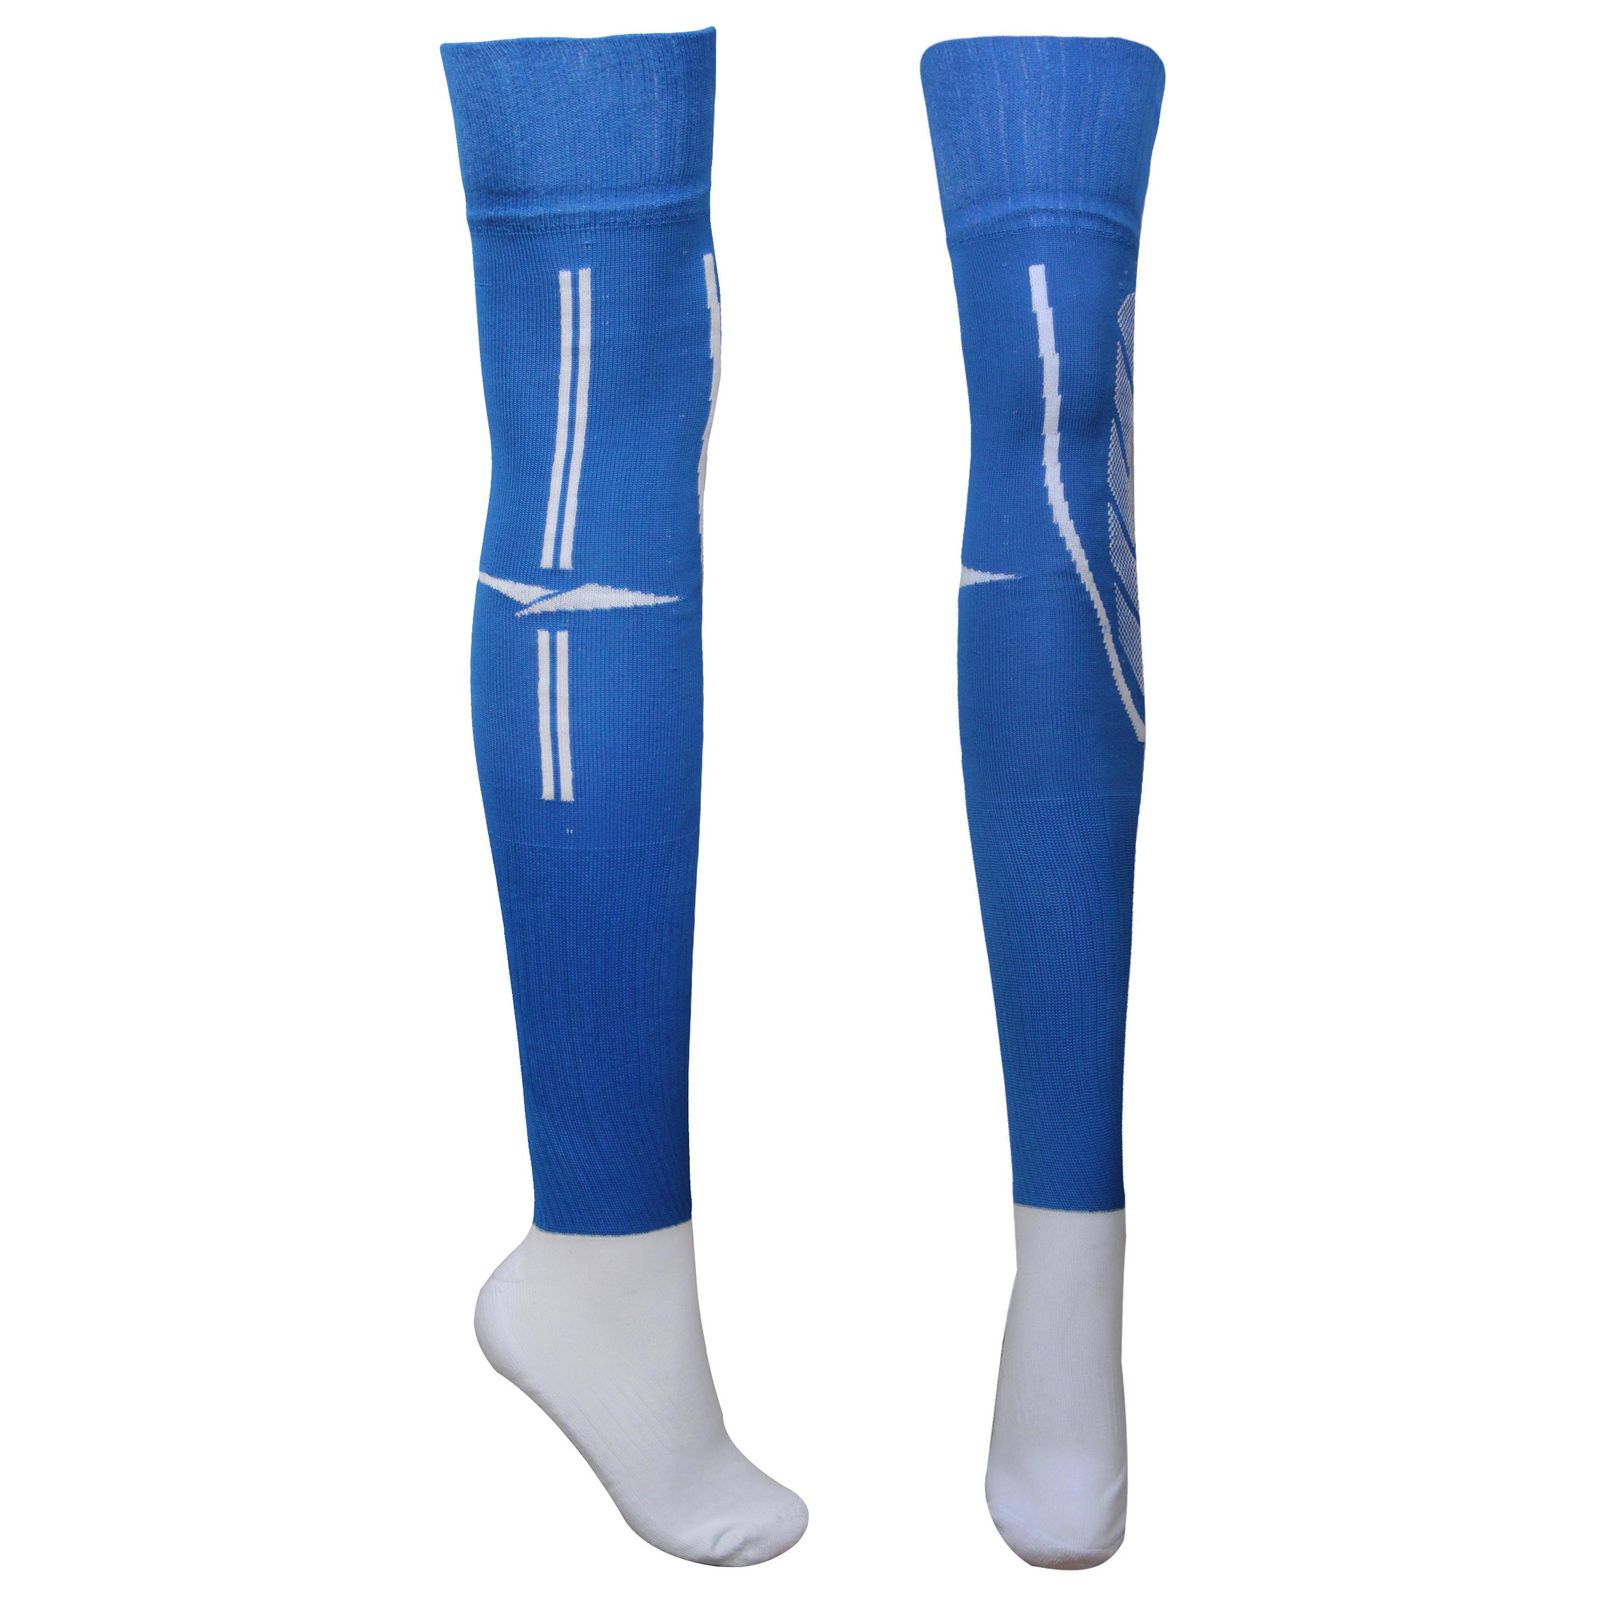 جوراب ورزشی ساق بلند مردانه ماییلدا مدل کف حوله ای کد 4187 رنگ آبی -  - 1